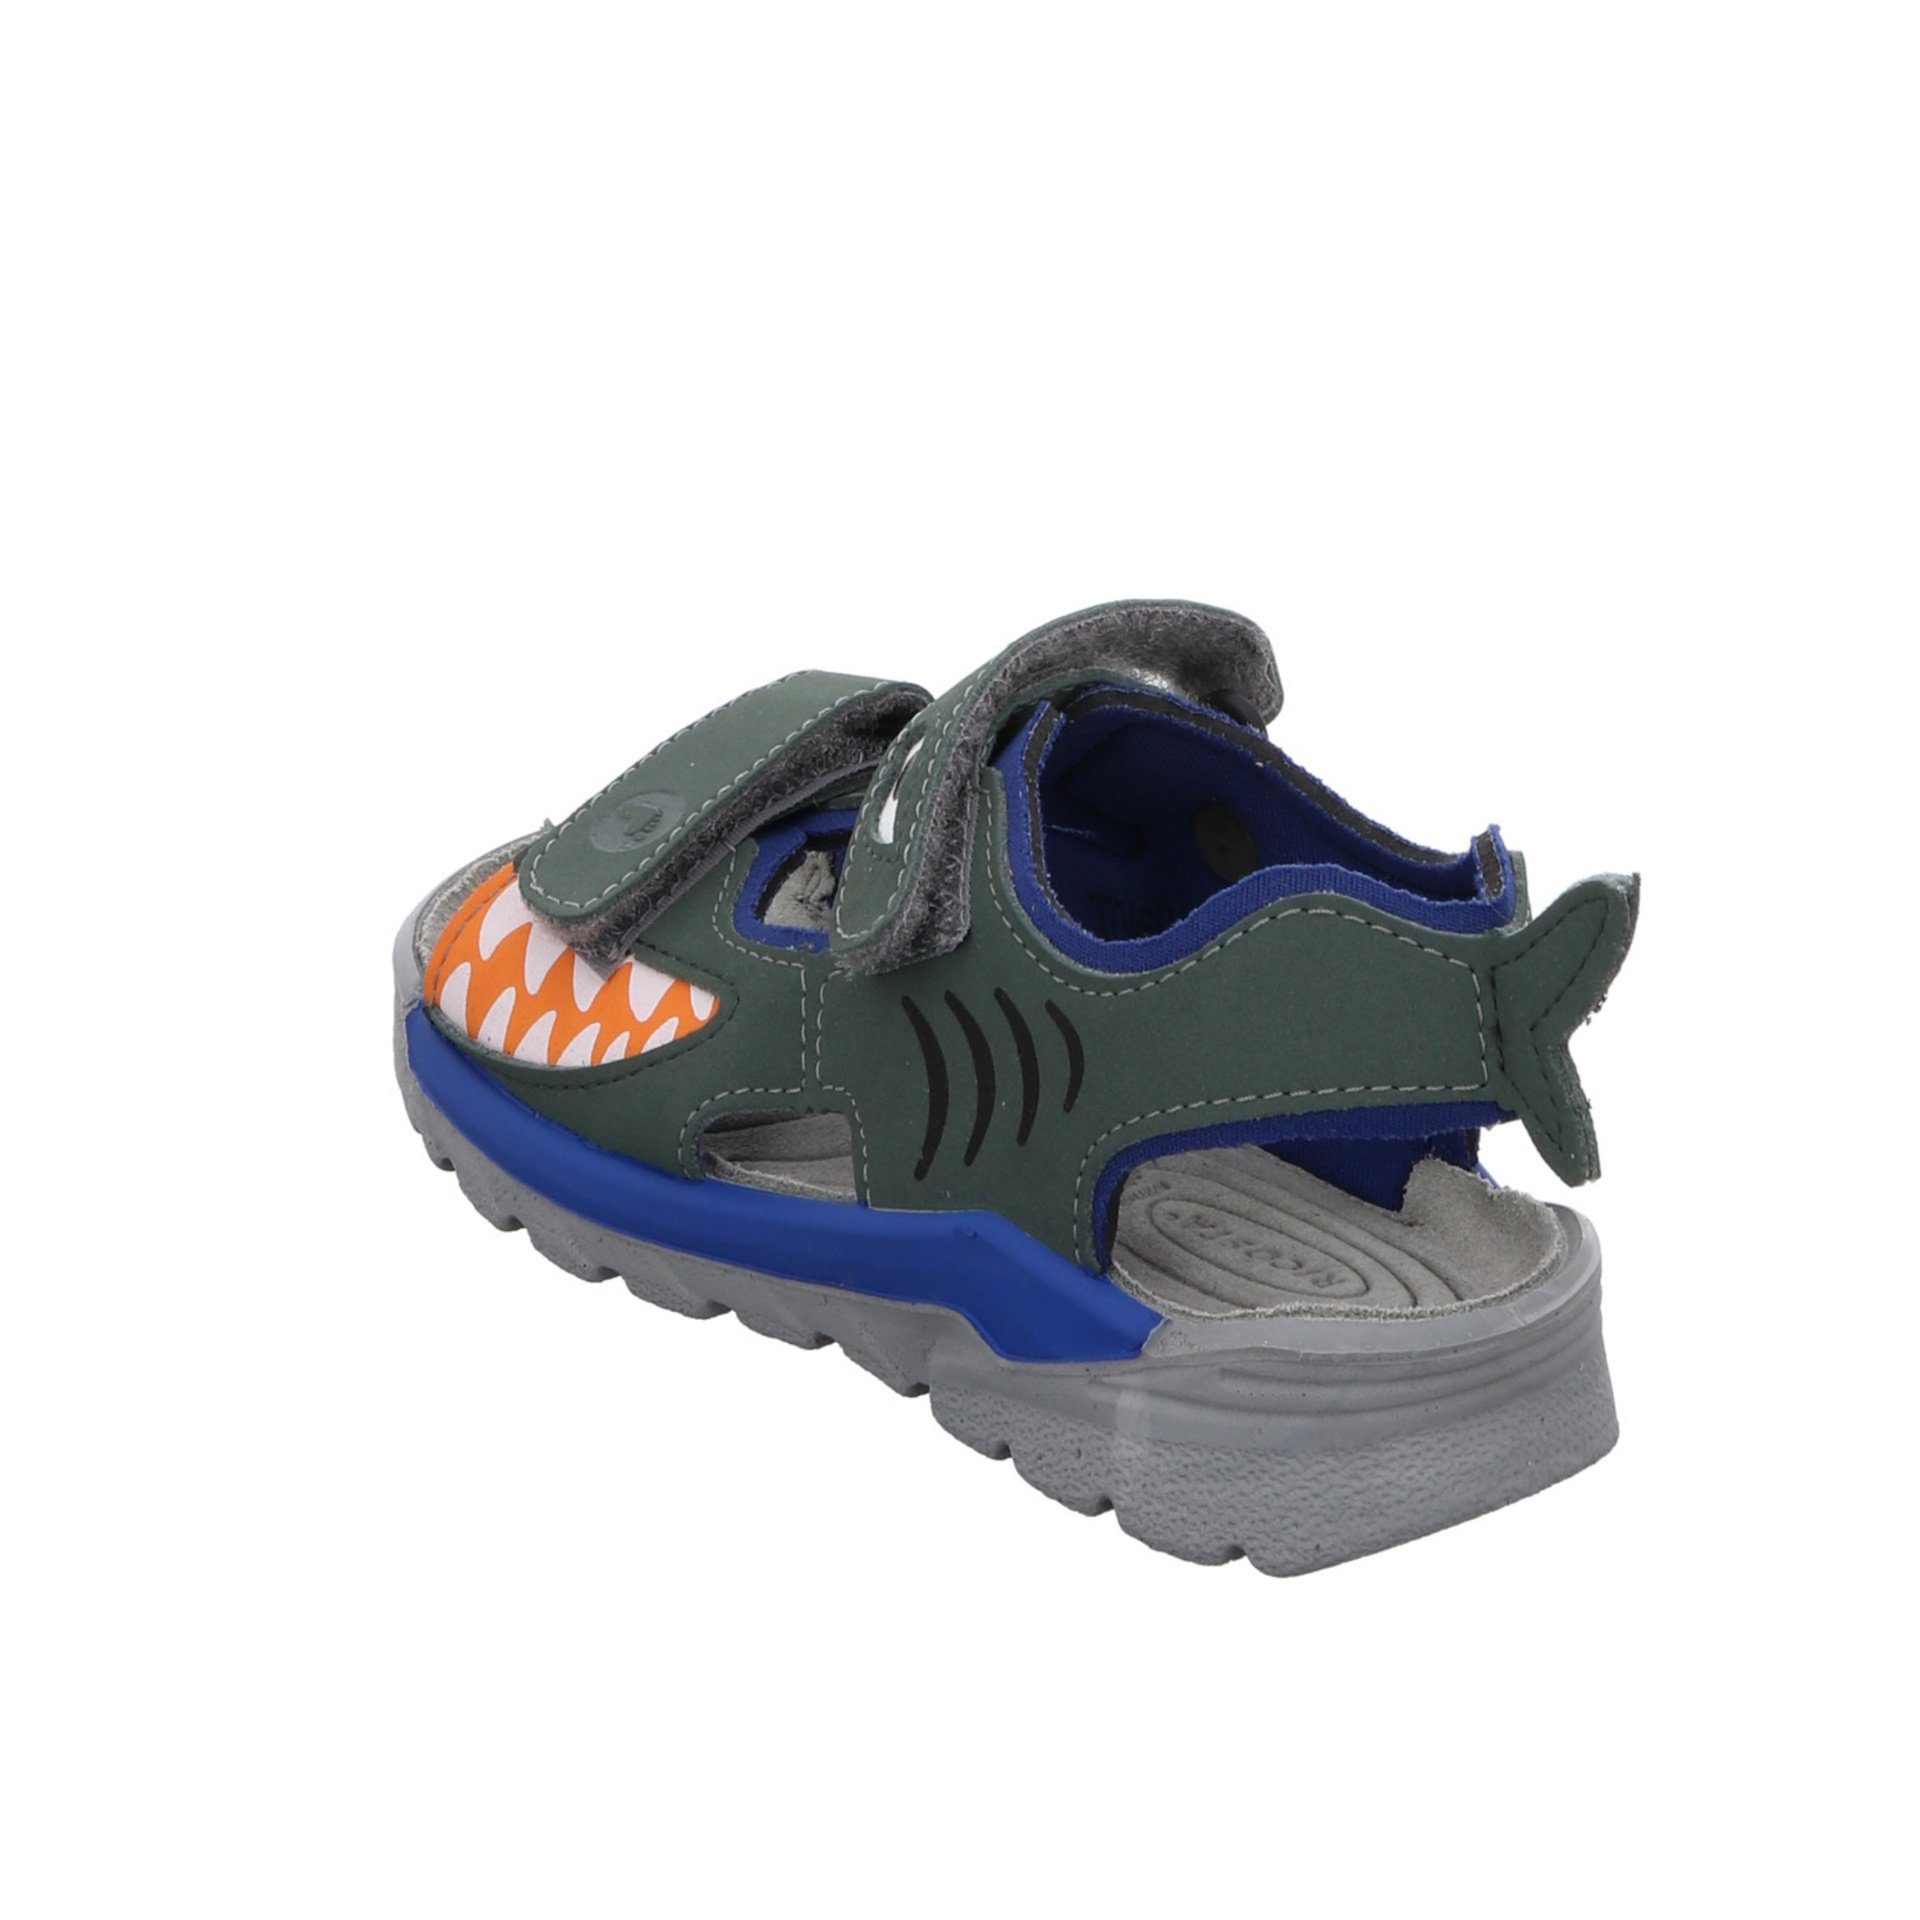 Textil Jungen Sandale Kinderschuhe grün Schuhe Shark Sandalen Ricosta Sandale